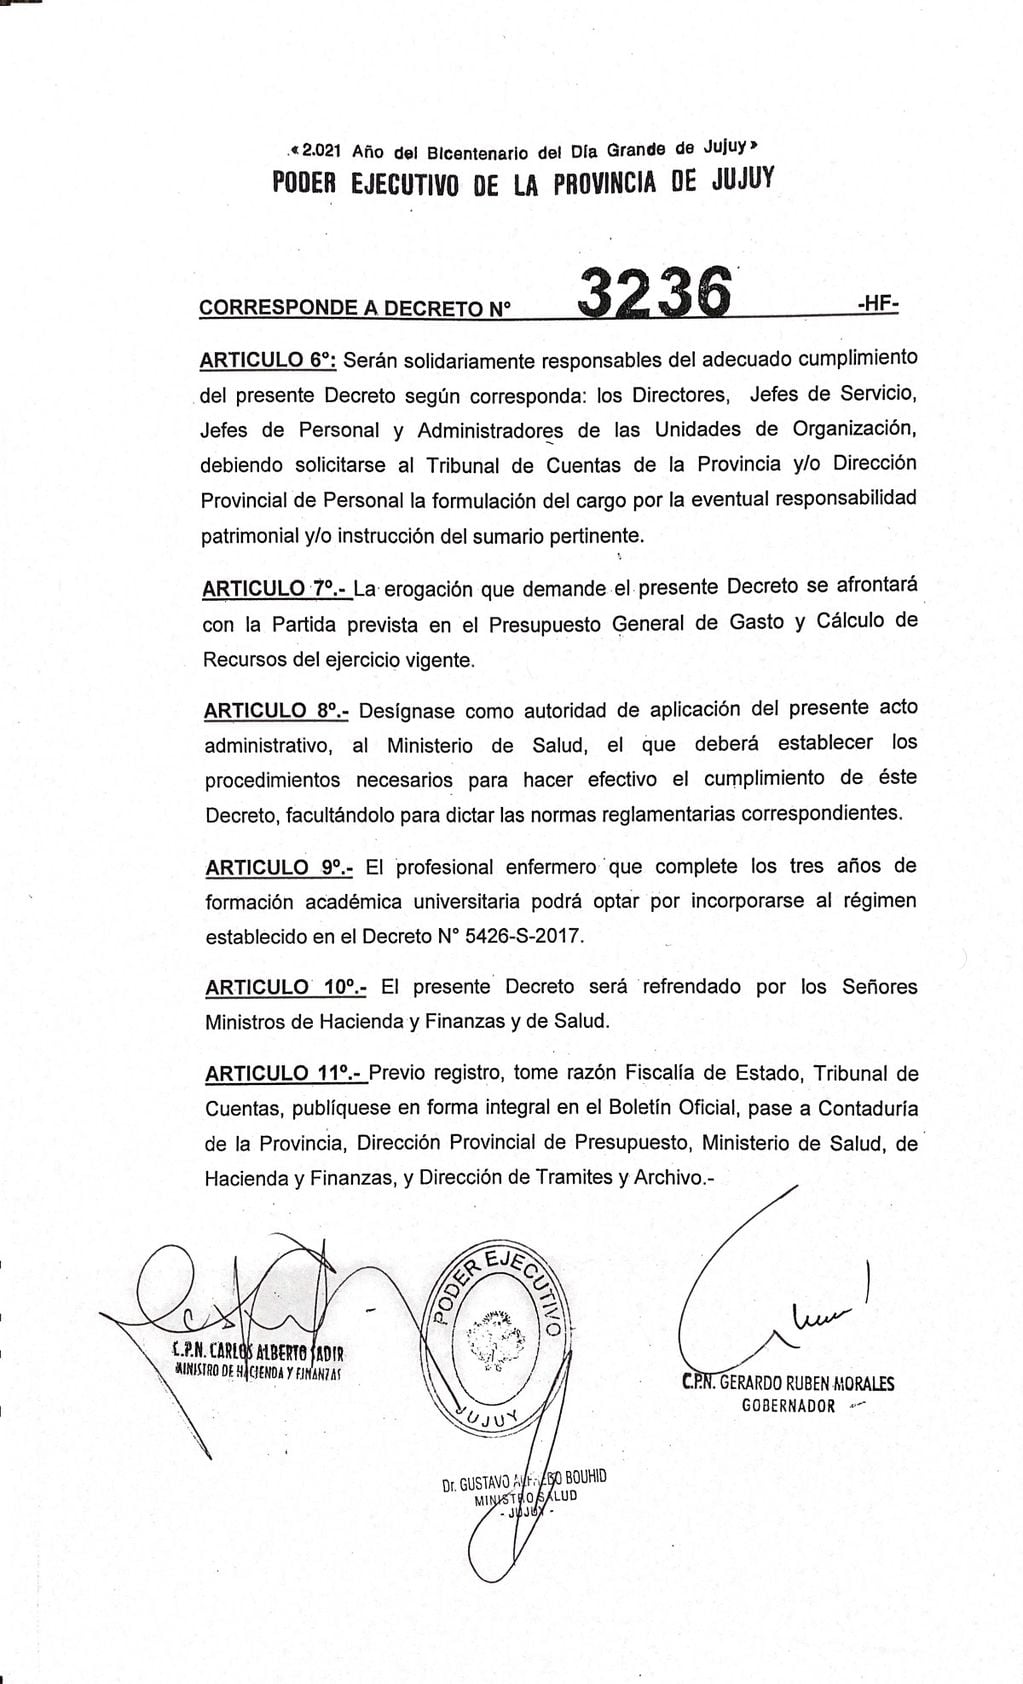 El decreto N° 3236-HF lleva las firmas de gobernador Gerardo Morales y de los ministros de Hacienda y Finanzas Carlos Sadir; y de Salud Gustavo Bouhid.